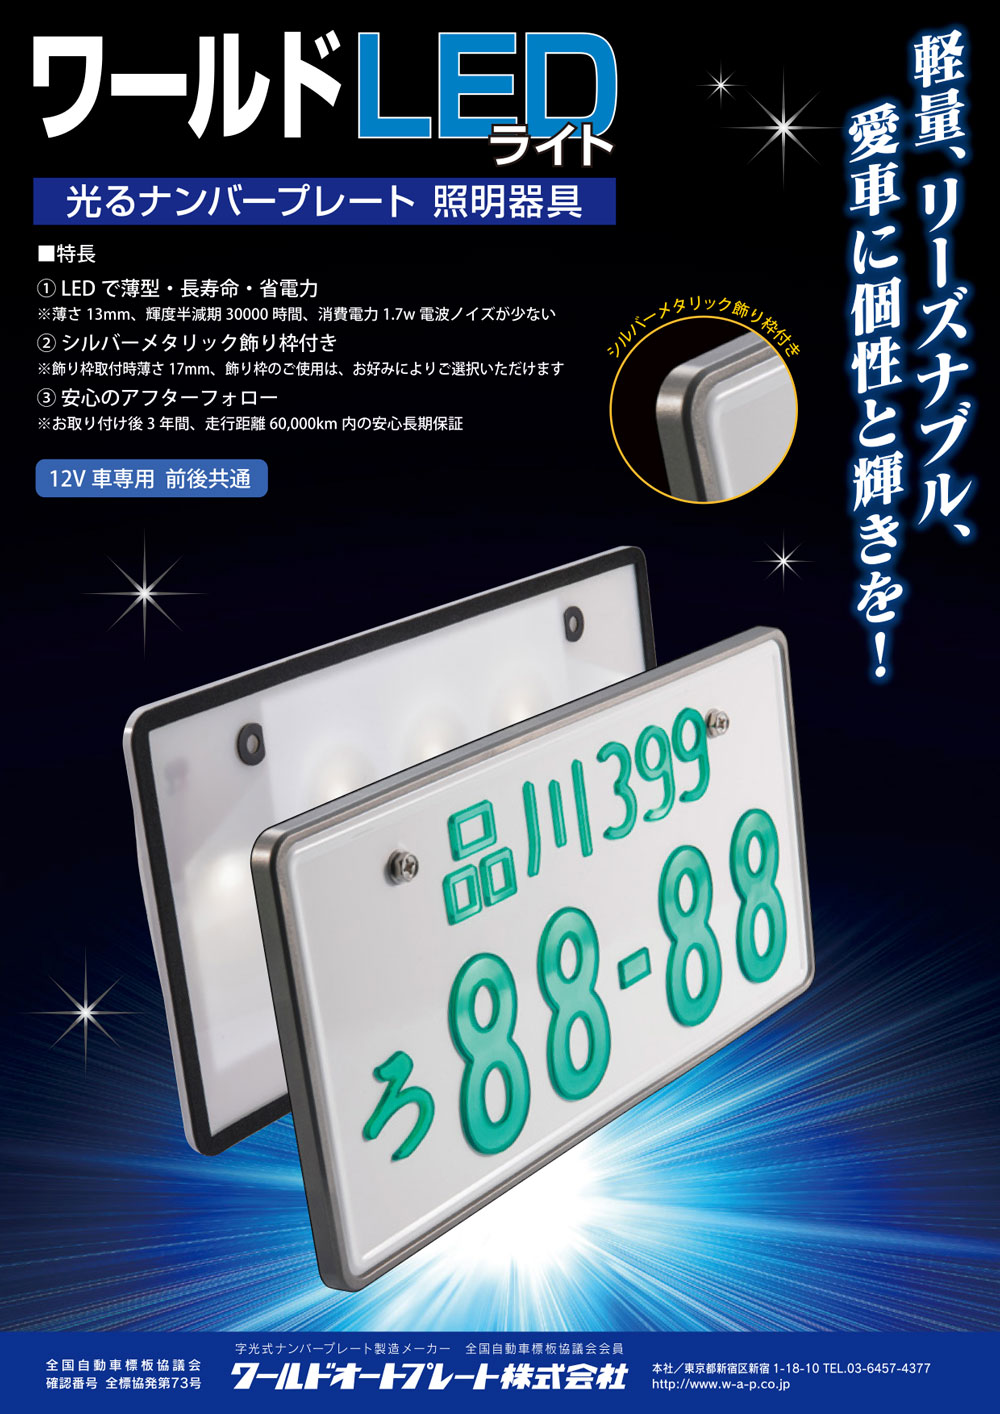 17688円 新品 送料無料 AIR LED 字光式 ナンバープレート 2枚セット グロリア ENY33 HBY33 UY33 送料無料 3年保証